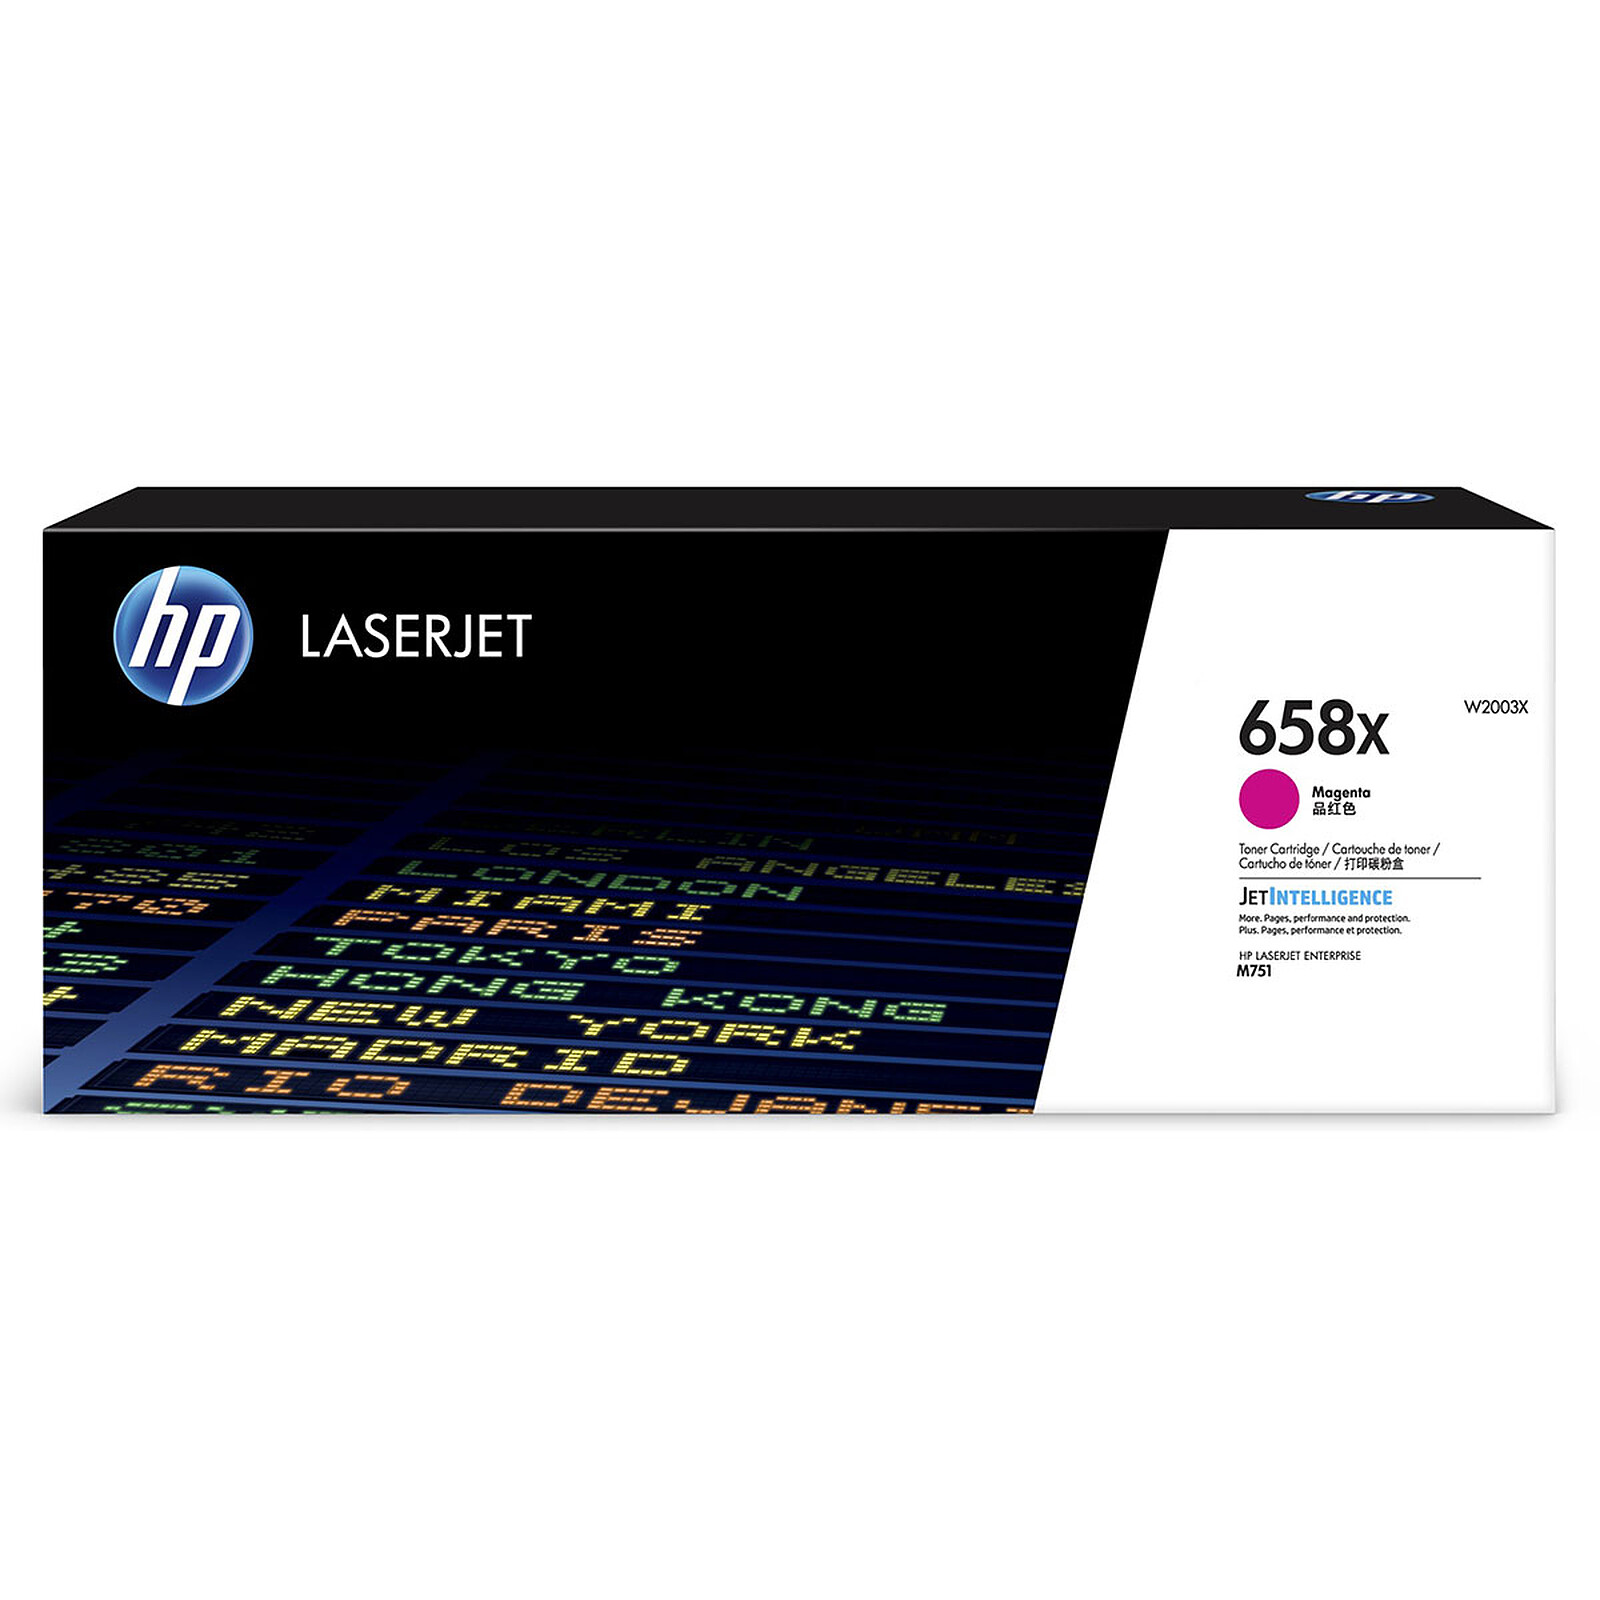 alto ellos Fuente HP LaserJet 658X (W2003X) - Tóner para impresora HP en LDLC